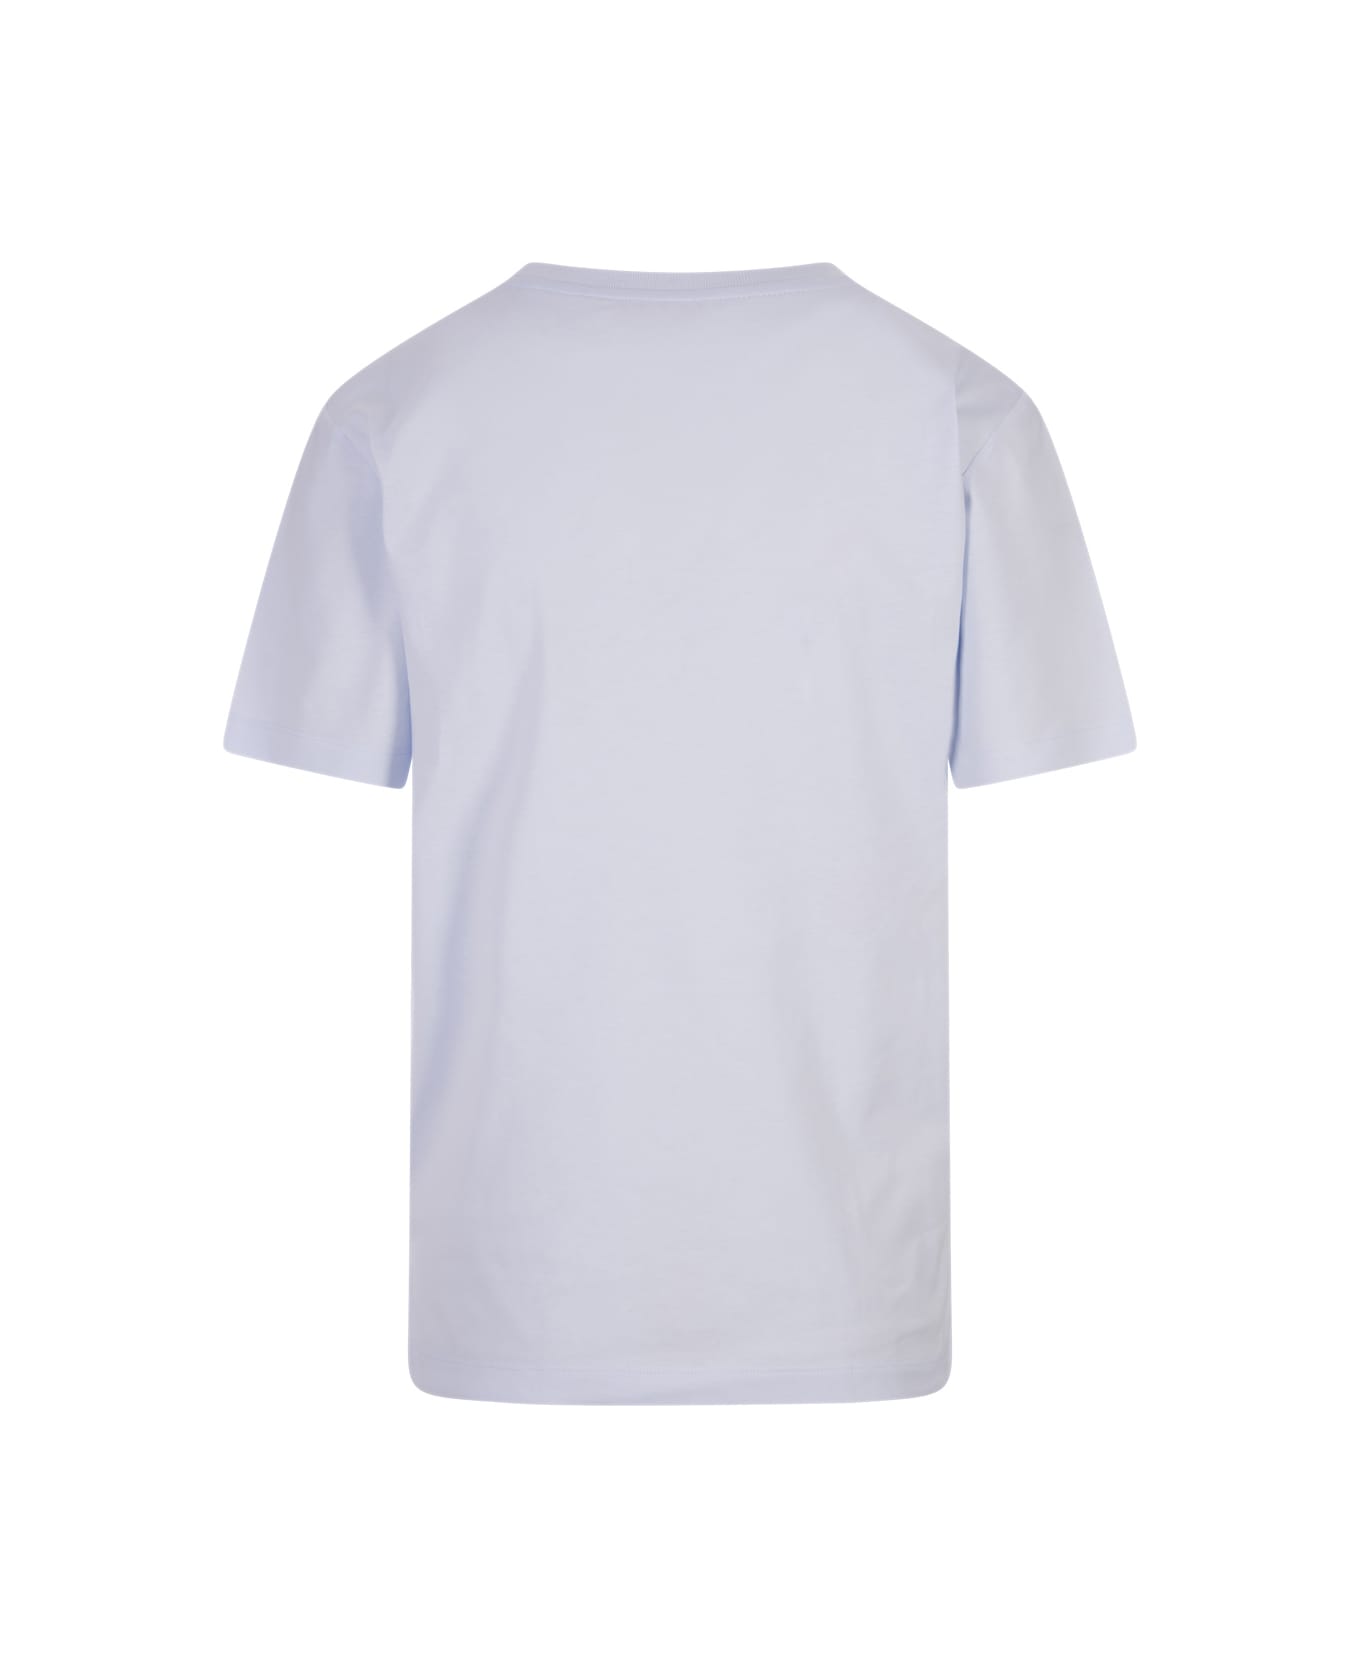 Marni Light Blue T-shirt With Marni Stitching - Blue